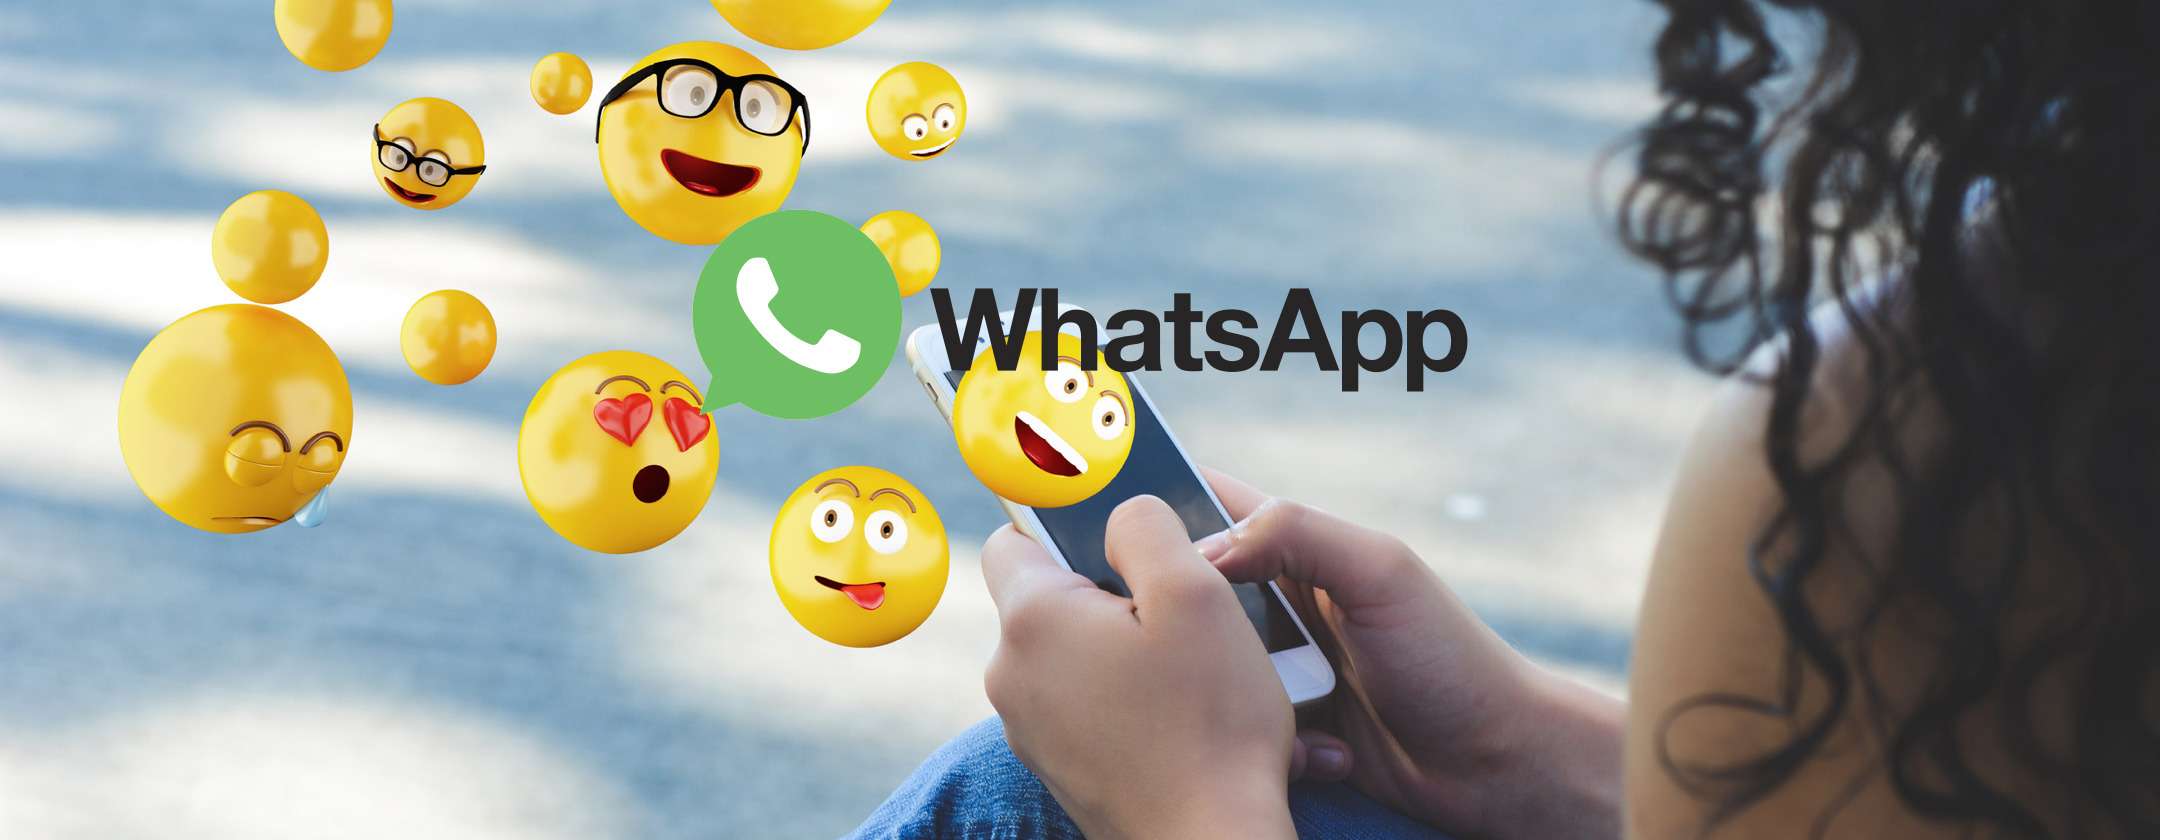 WhatsApp: in arrivo le informazioni sulle reazioni